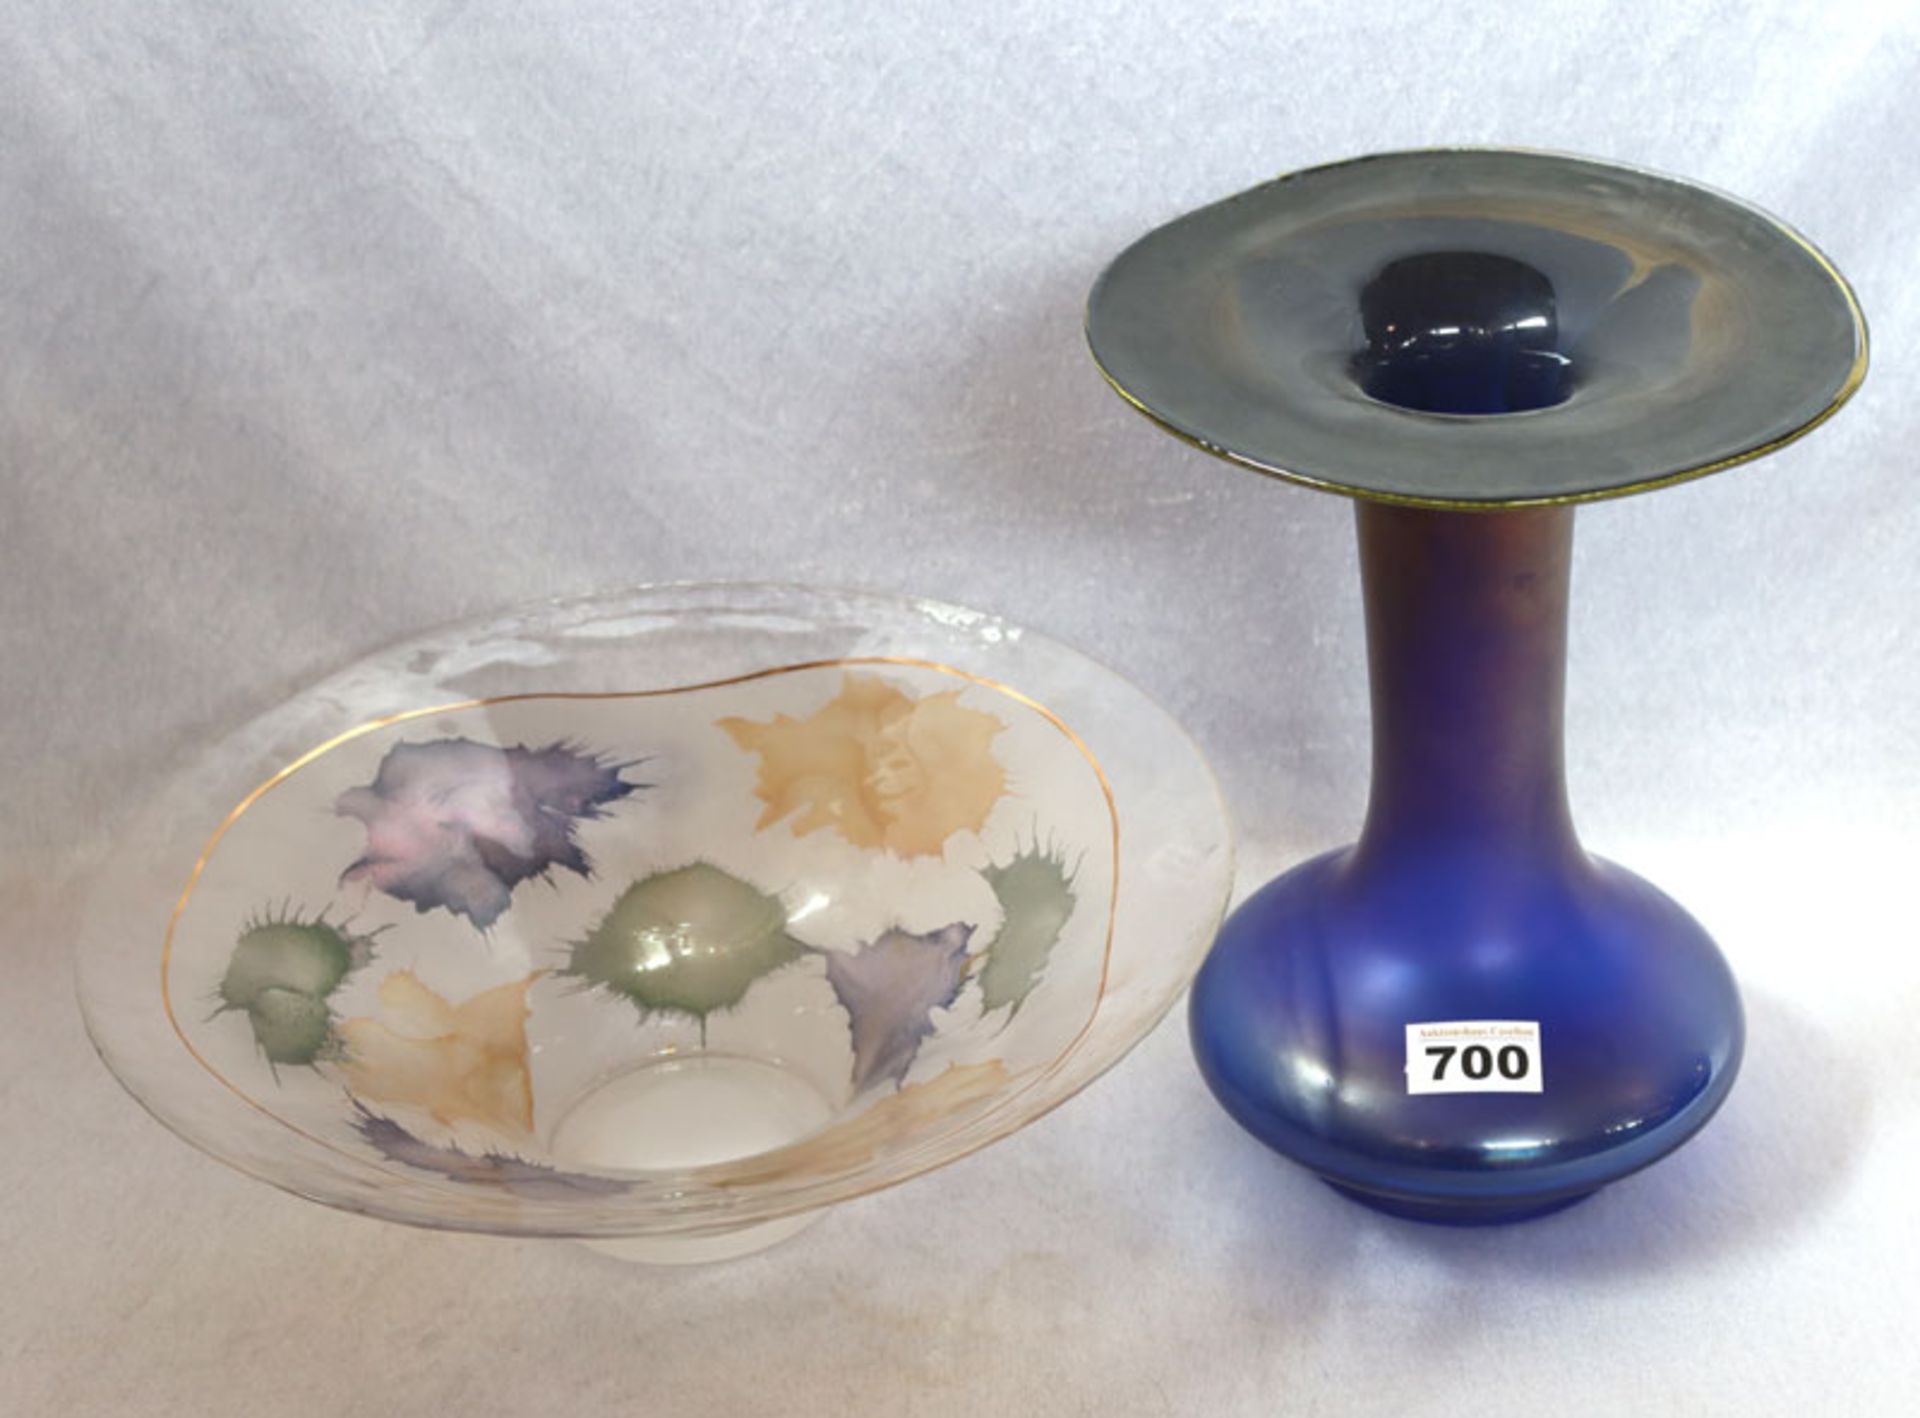 Eisch Blumenvase, blau/lila/gelb, H 28,5 cm, signiert Eisch 78, und Glasschale mit lila/gelb/